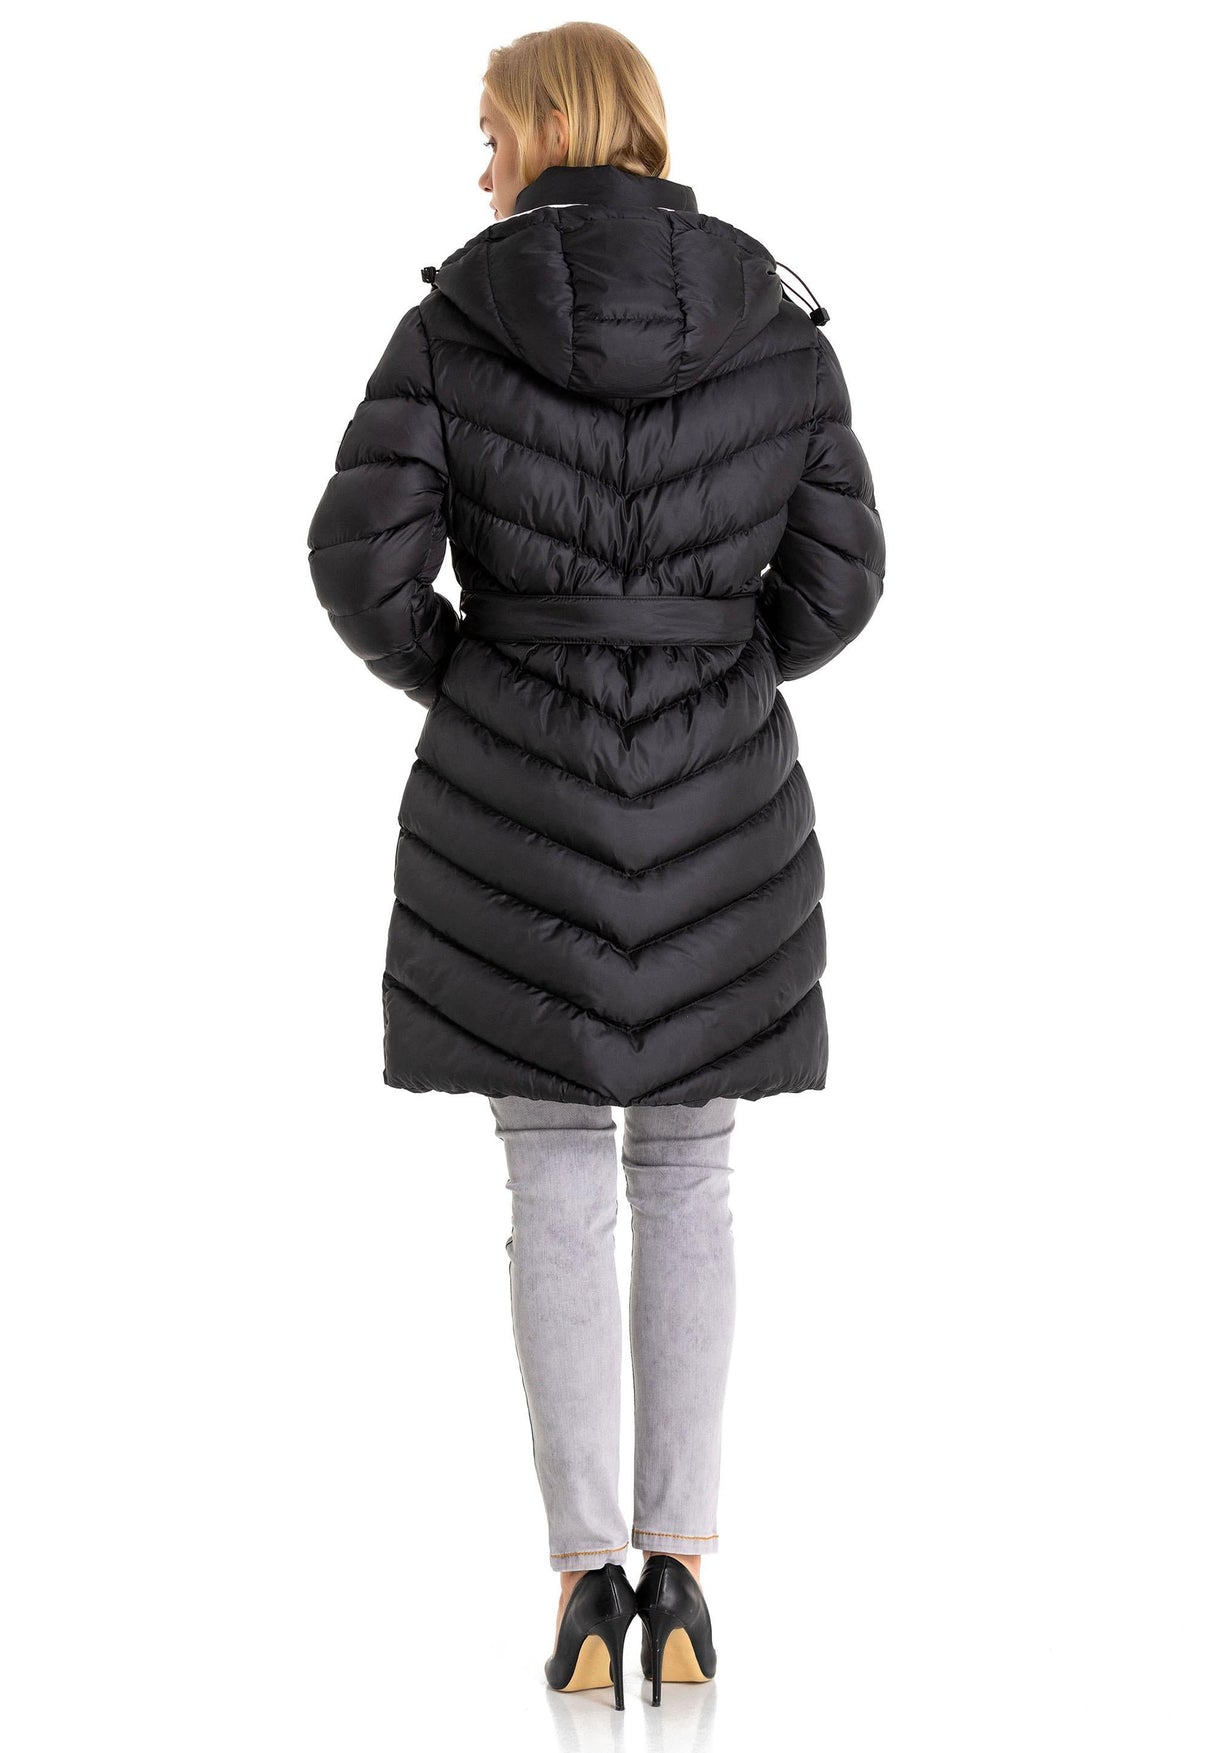 WM135 Giacca invernale femminile con cappuccio rimovibile